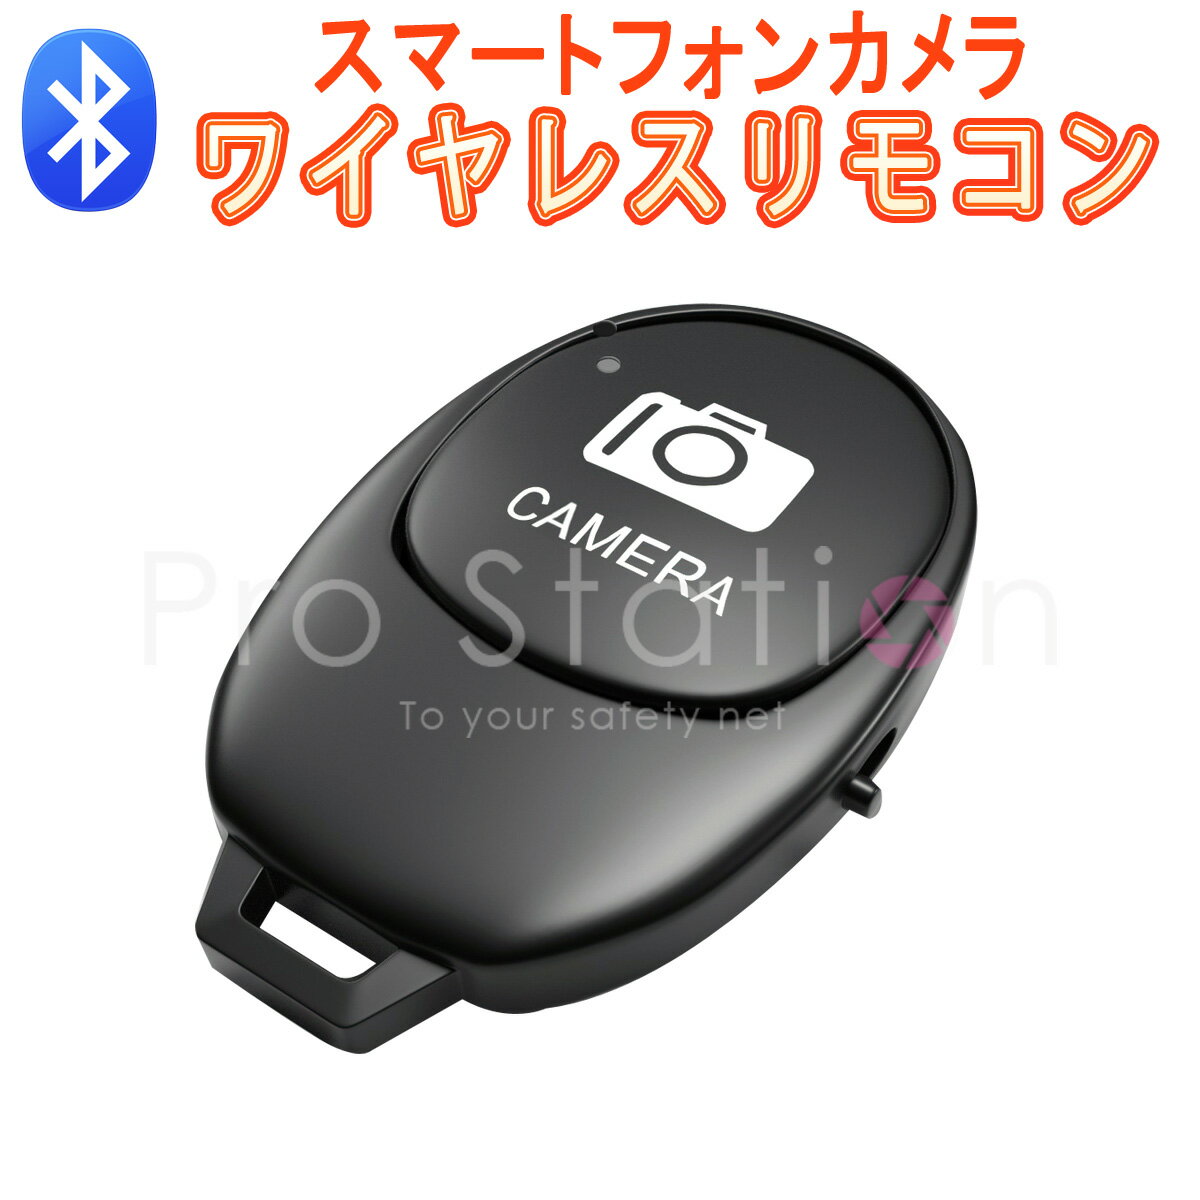 Bluetooth リモコンシャッター Bluetooth スマートフォン用 カメラリモコン ワイヤレス スマートフォン用カメラシャ…